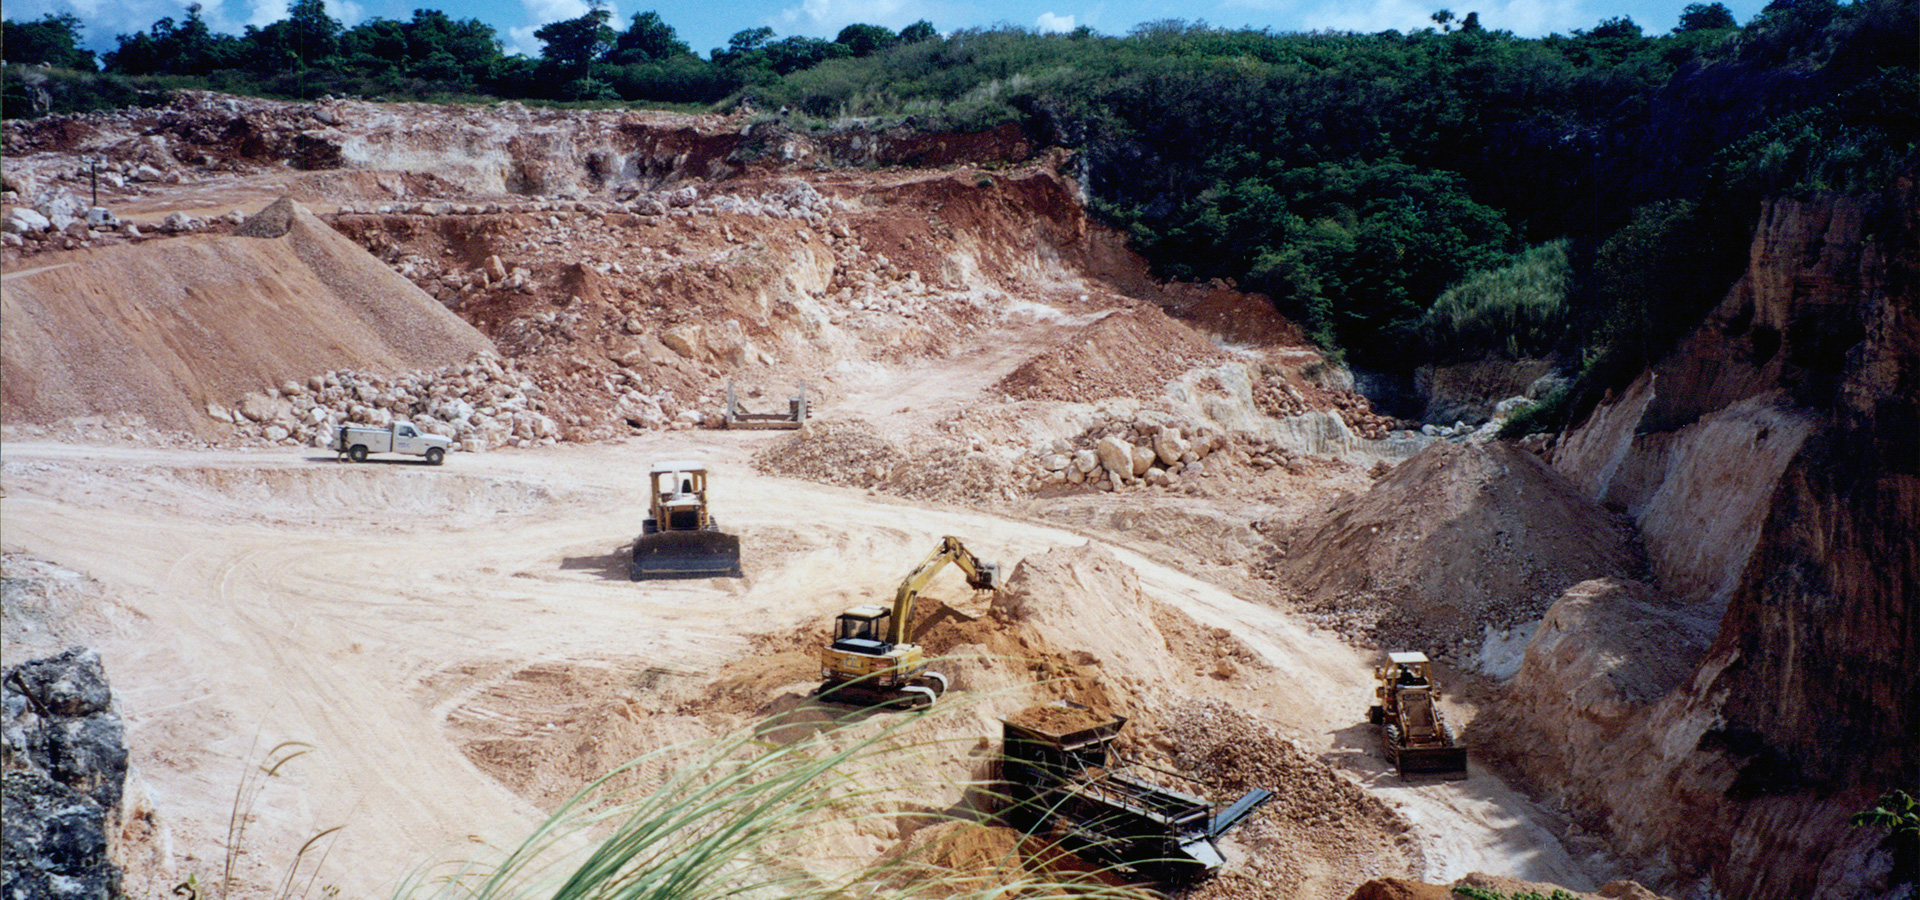 Introducing the Smithbridge Guam Quarry